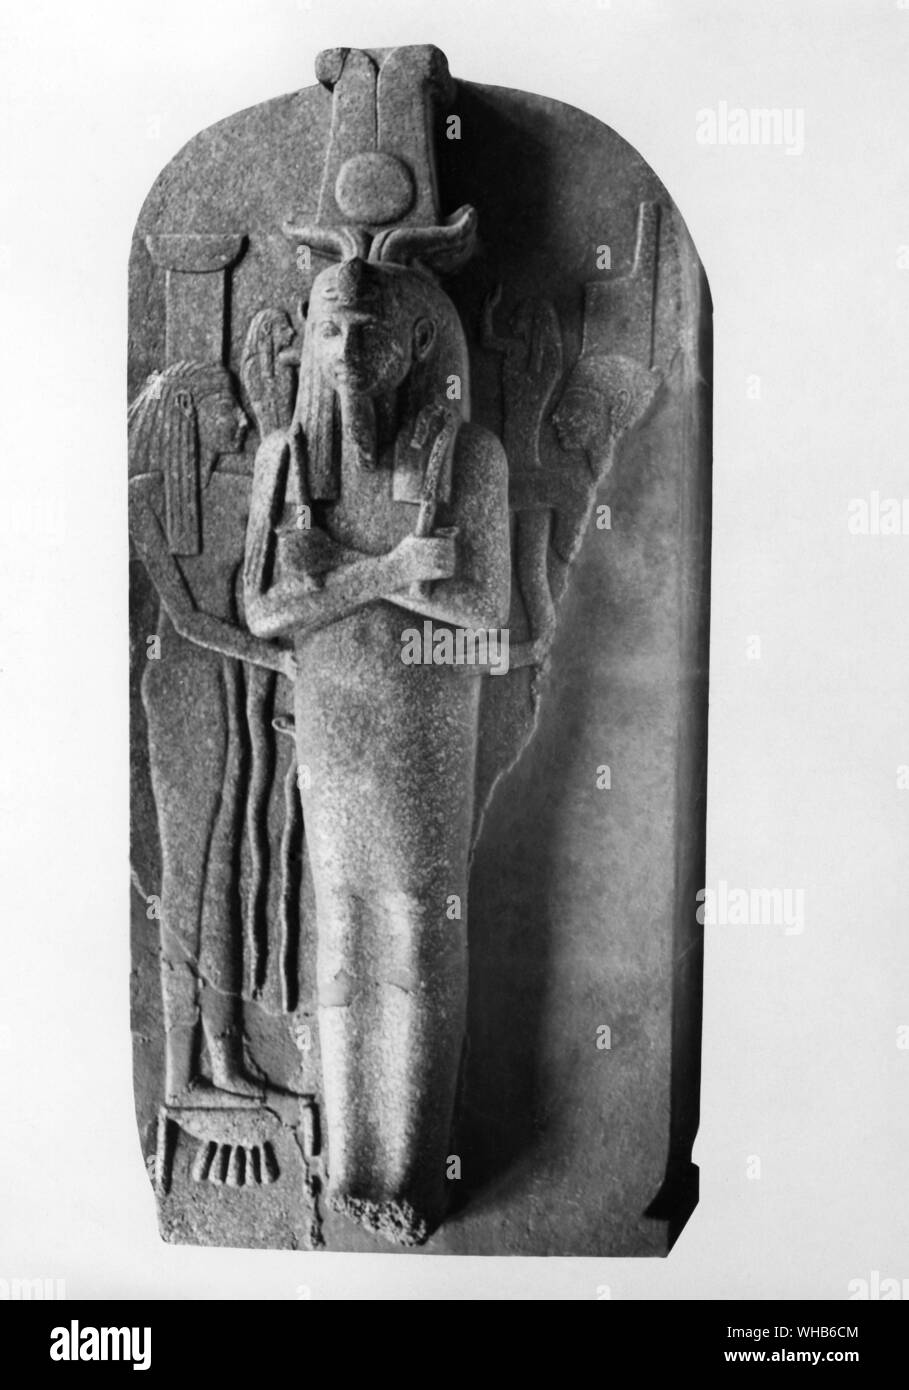 Couvercle du cercueil de granit de Ramsès III. Ramsès III est représenté comme le dieu Osiris tenant la parure divine et est assisté par les déesses Nephthys et Neith xxème dynastie 1200 - 1090 BC Nouveau Royaume -. Usimare Ramsès III (également écrit Ramsès et Ramsès) a été le deuxième Pharaon de la xxe dynastie, et est considéré comme le dernier grand royaume nouveau roi d'exercer une autorité sur l'Égypte.. Banque D'Images